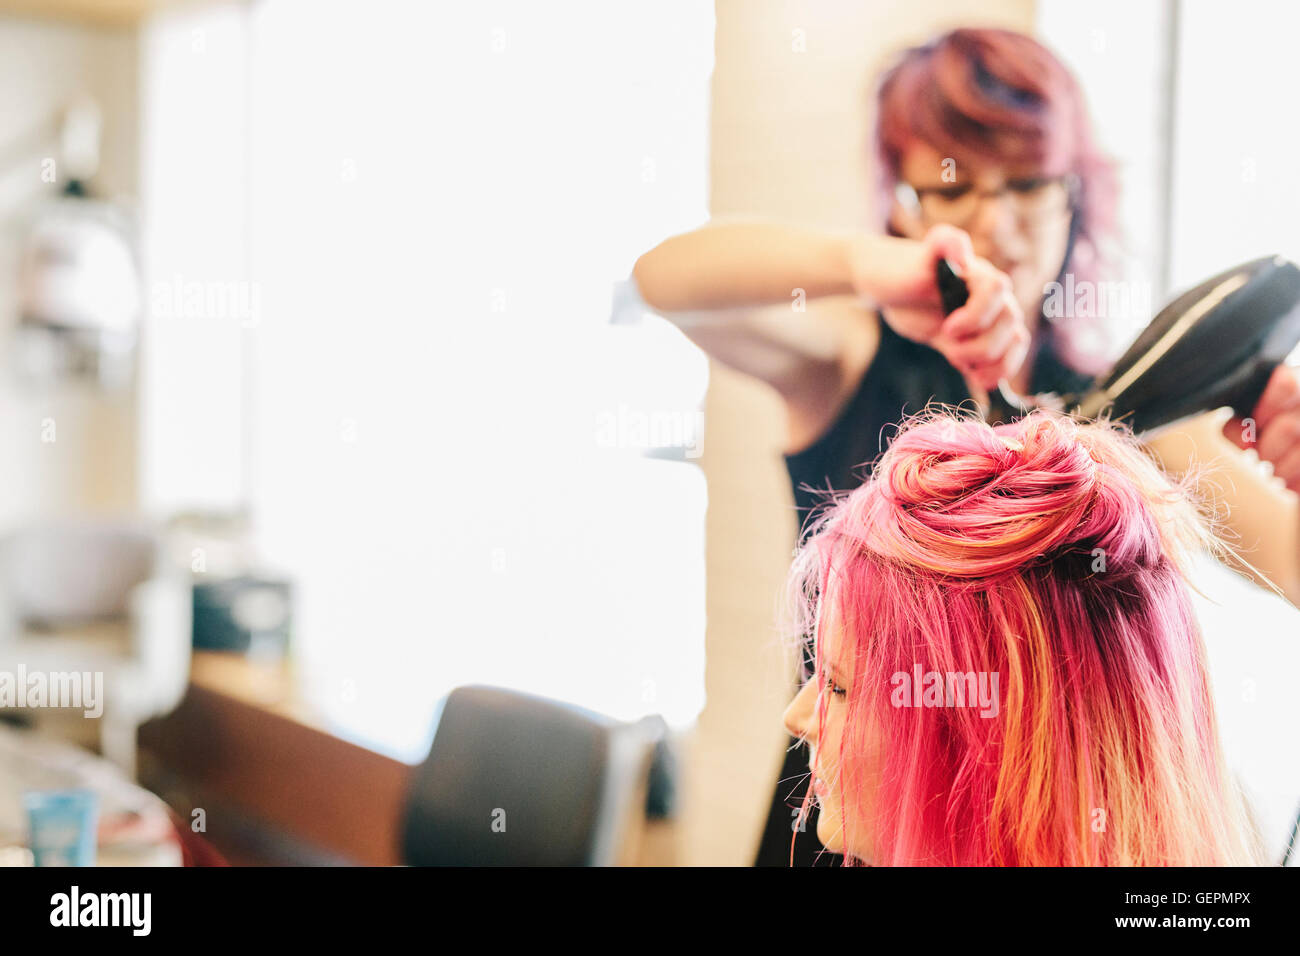 Ein Friseur, ein Client langen rosa gefärbte Haare föhnen. Stockfoto